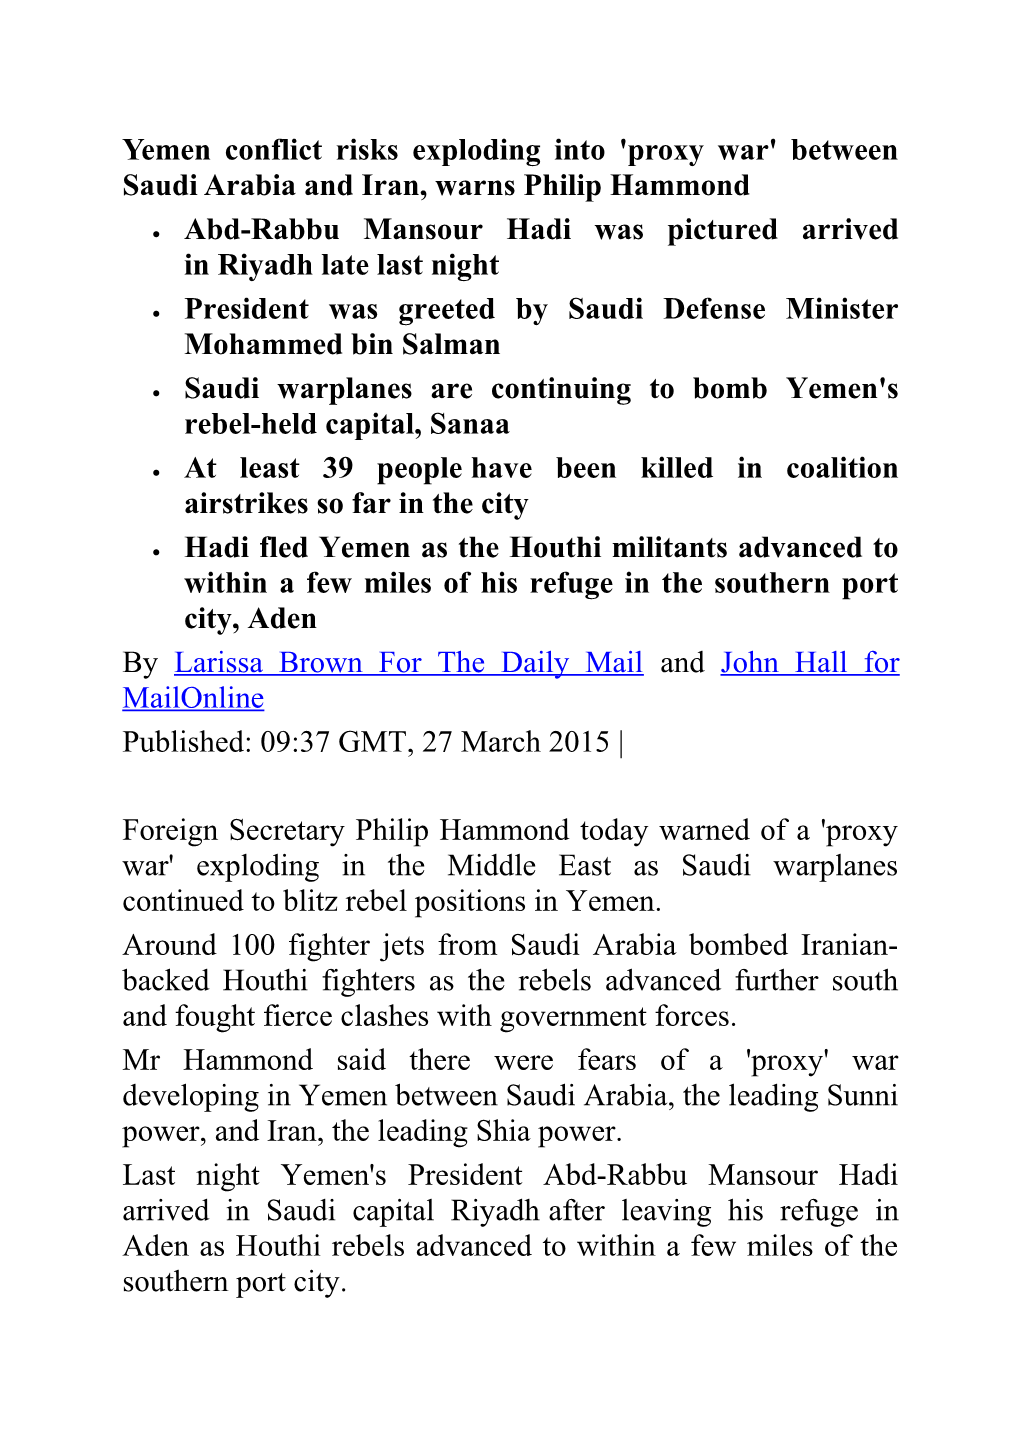 Yemen Conflict Risks Exploding Into 'Proxy War' Between Saudi Arabia and Iran, Warns Philip